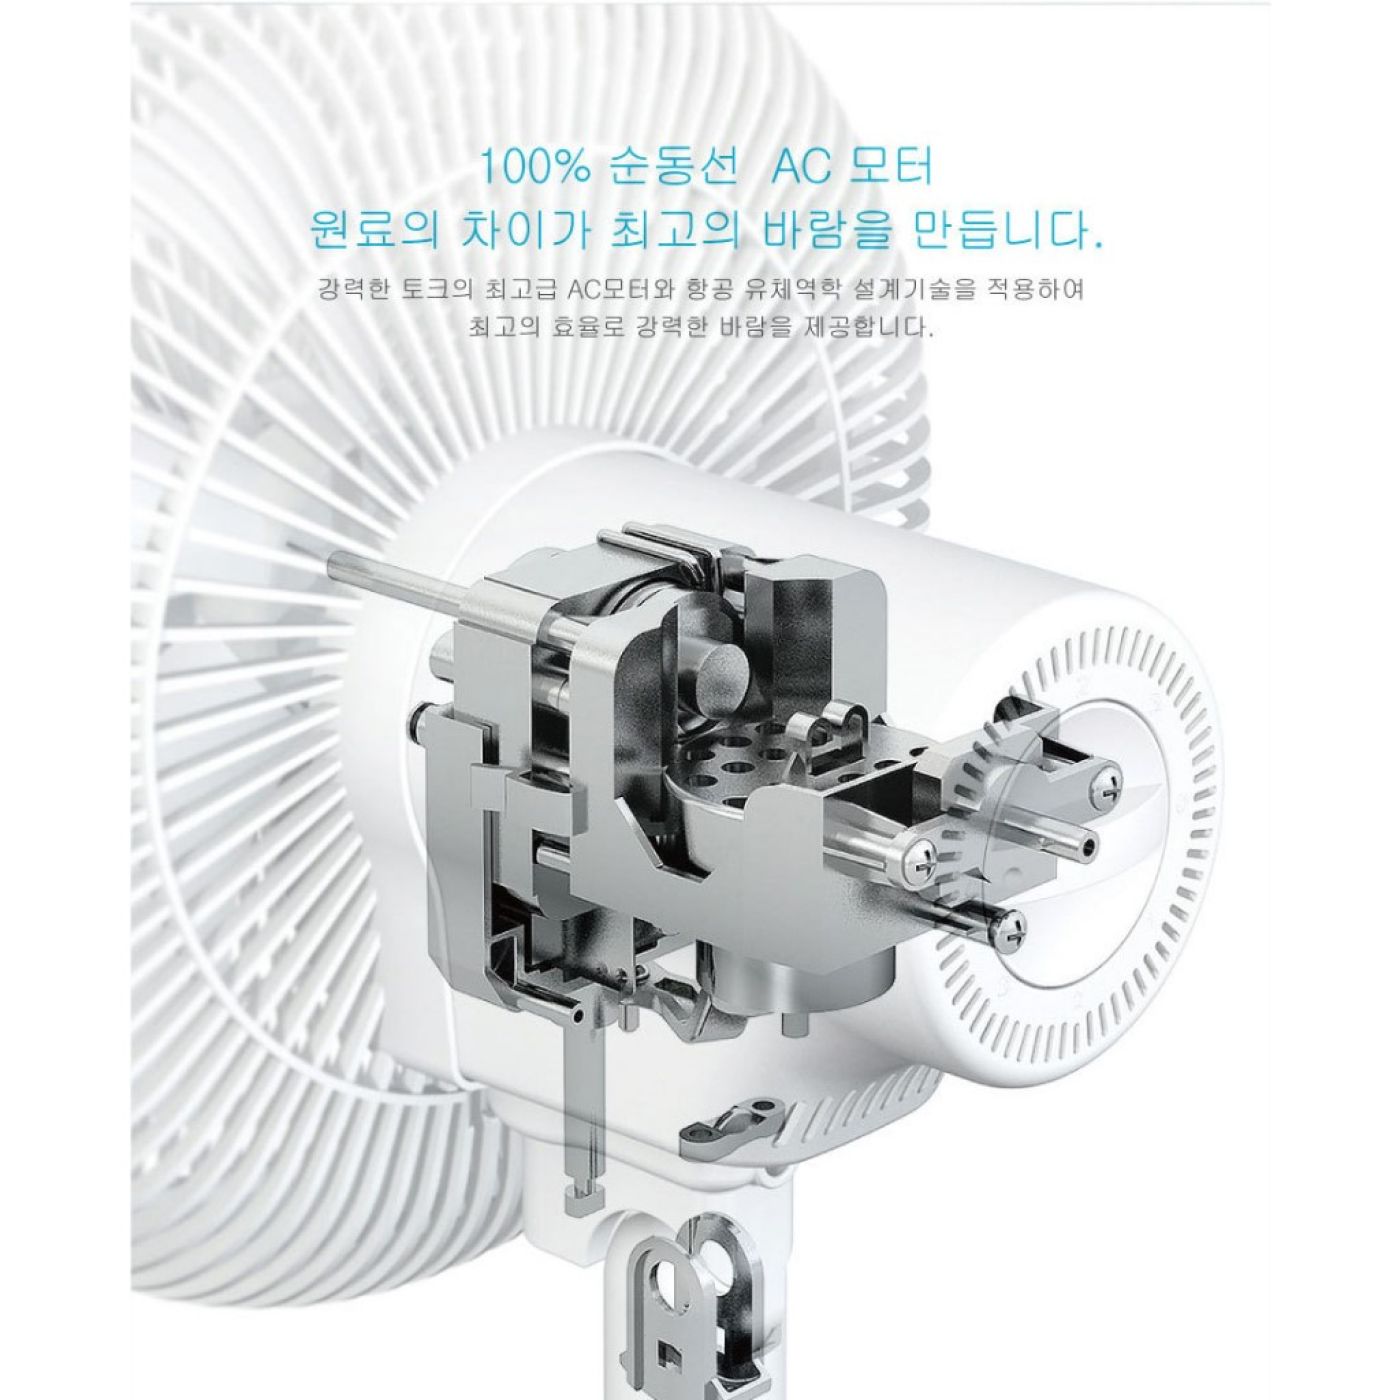 Quạt cây thông minh tiết kiệm điện phong cách Hàn Quốc CKEA (T534)